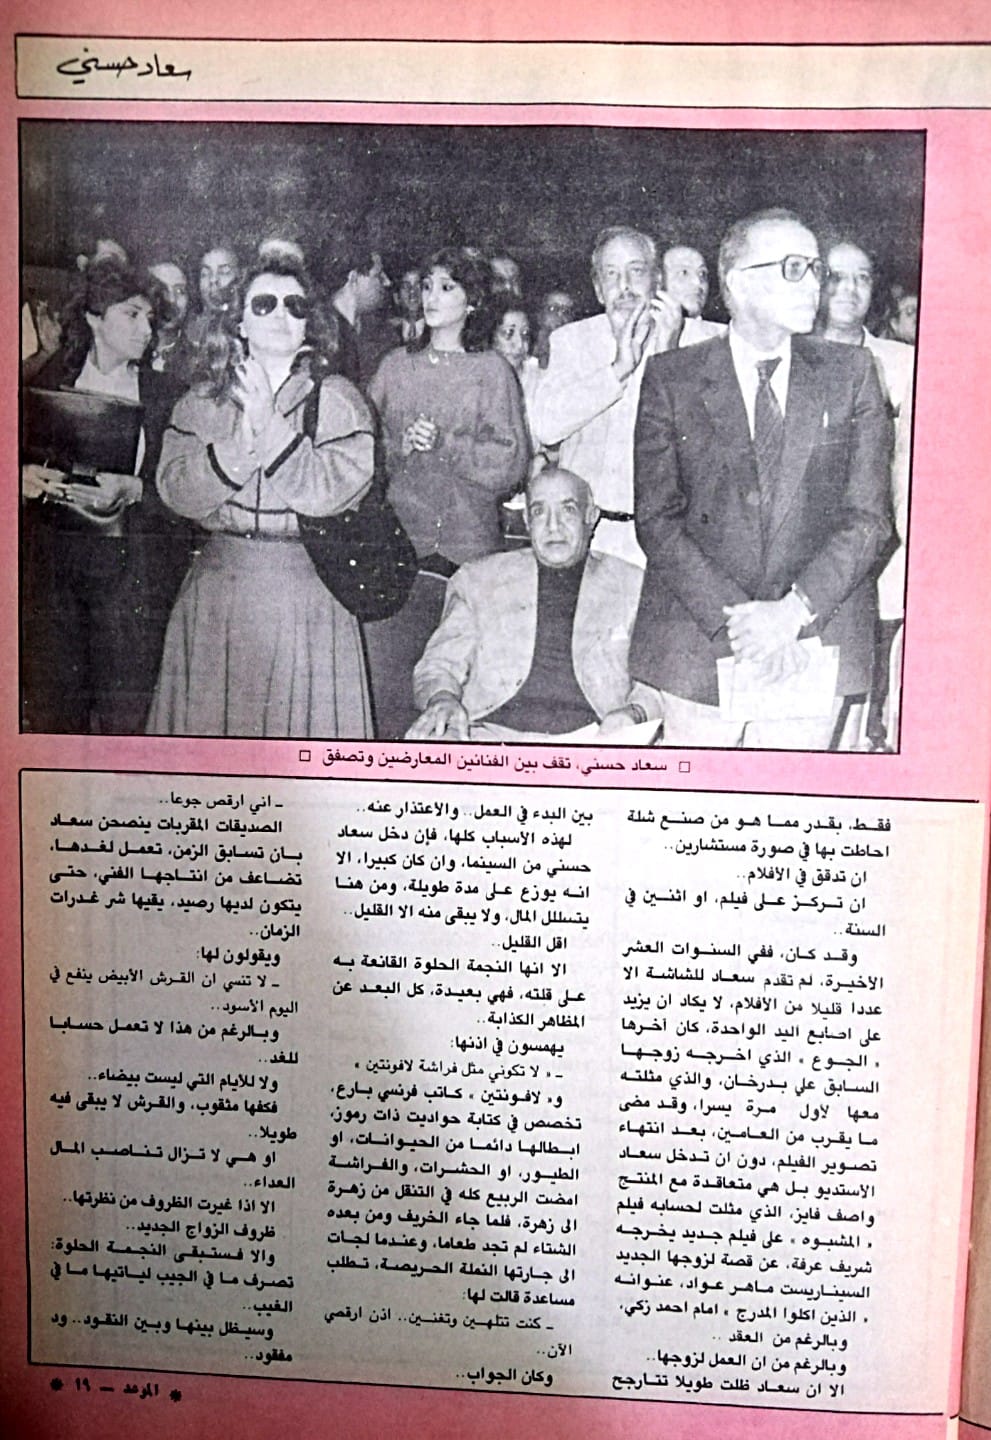 1988 - مقال صحفي : سعاد حسني .. بينها وبين الثراء ود .. مفقود ! 1988 م 411